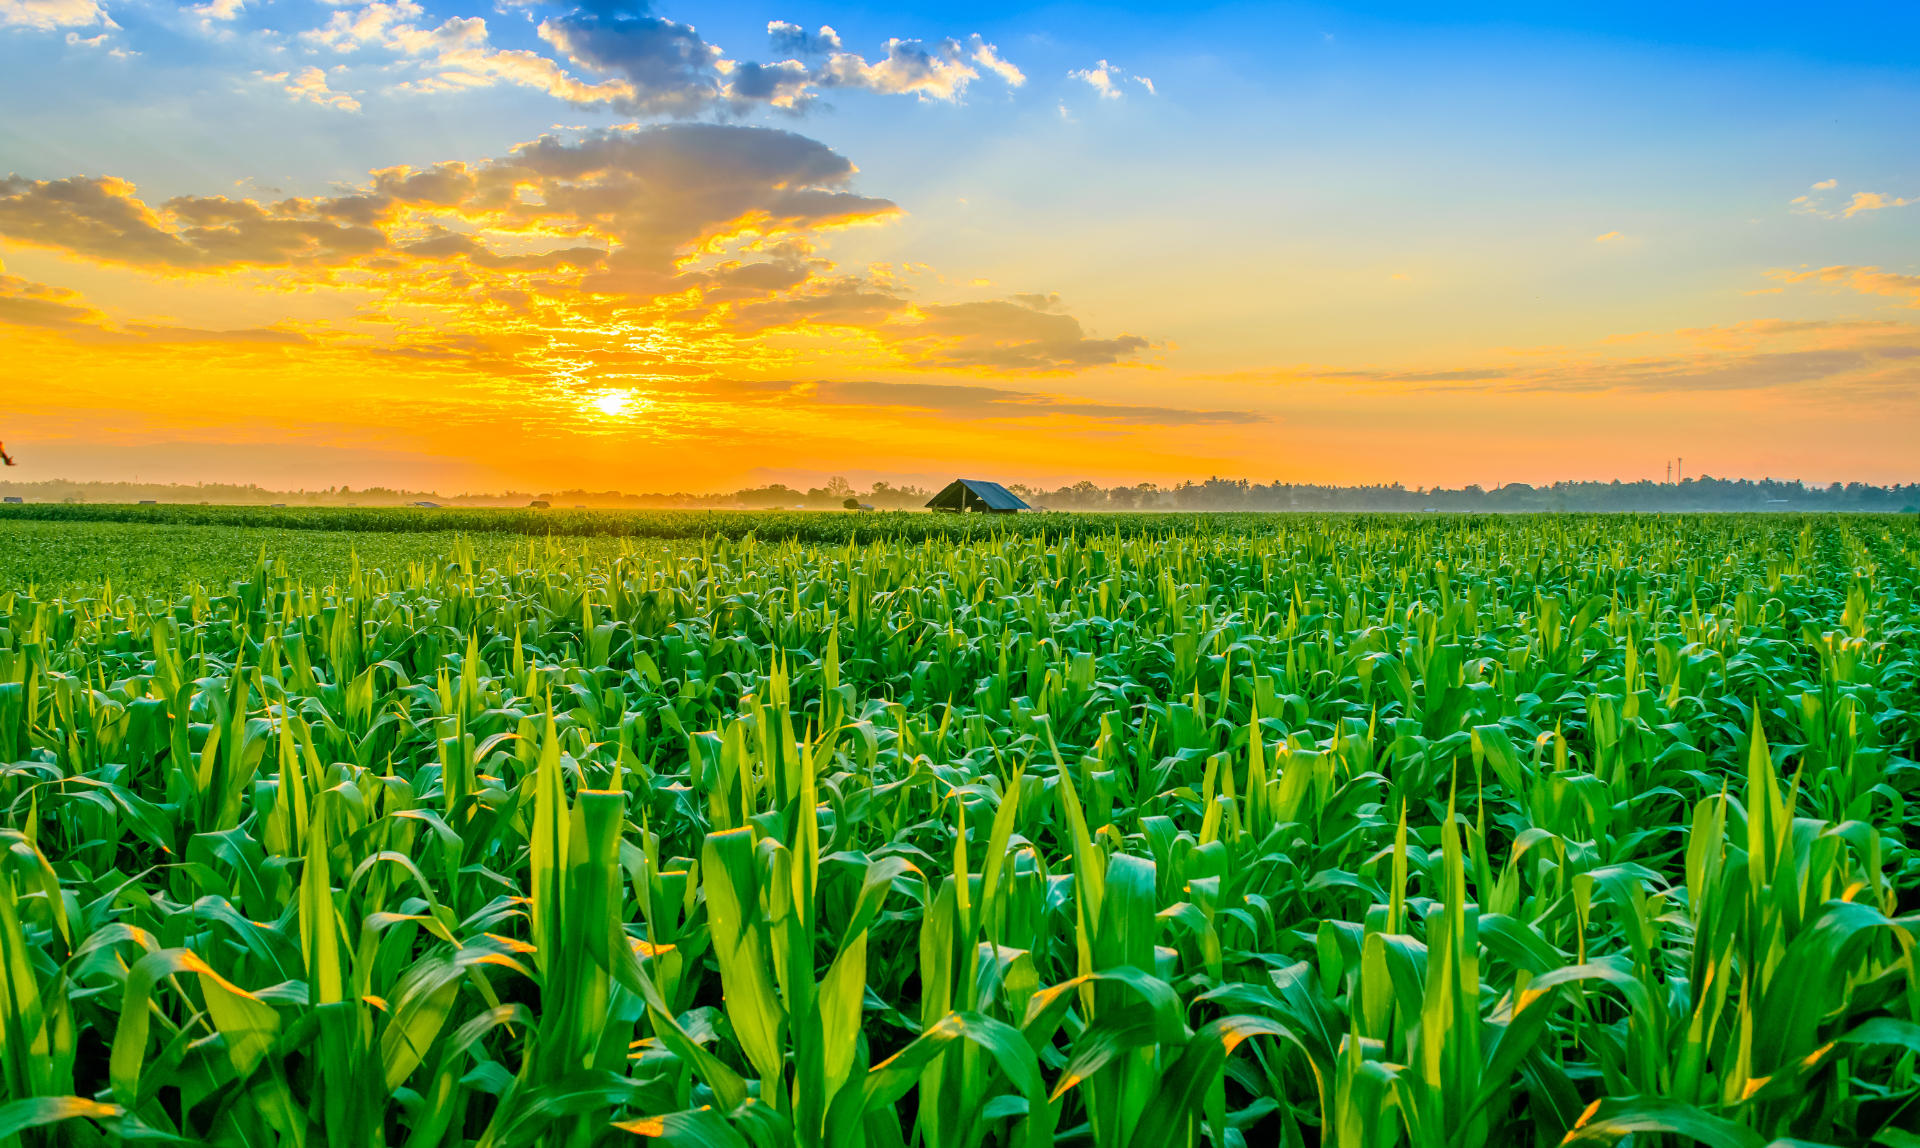 Ecolife – Arena 100% natural hecha de maíz